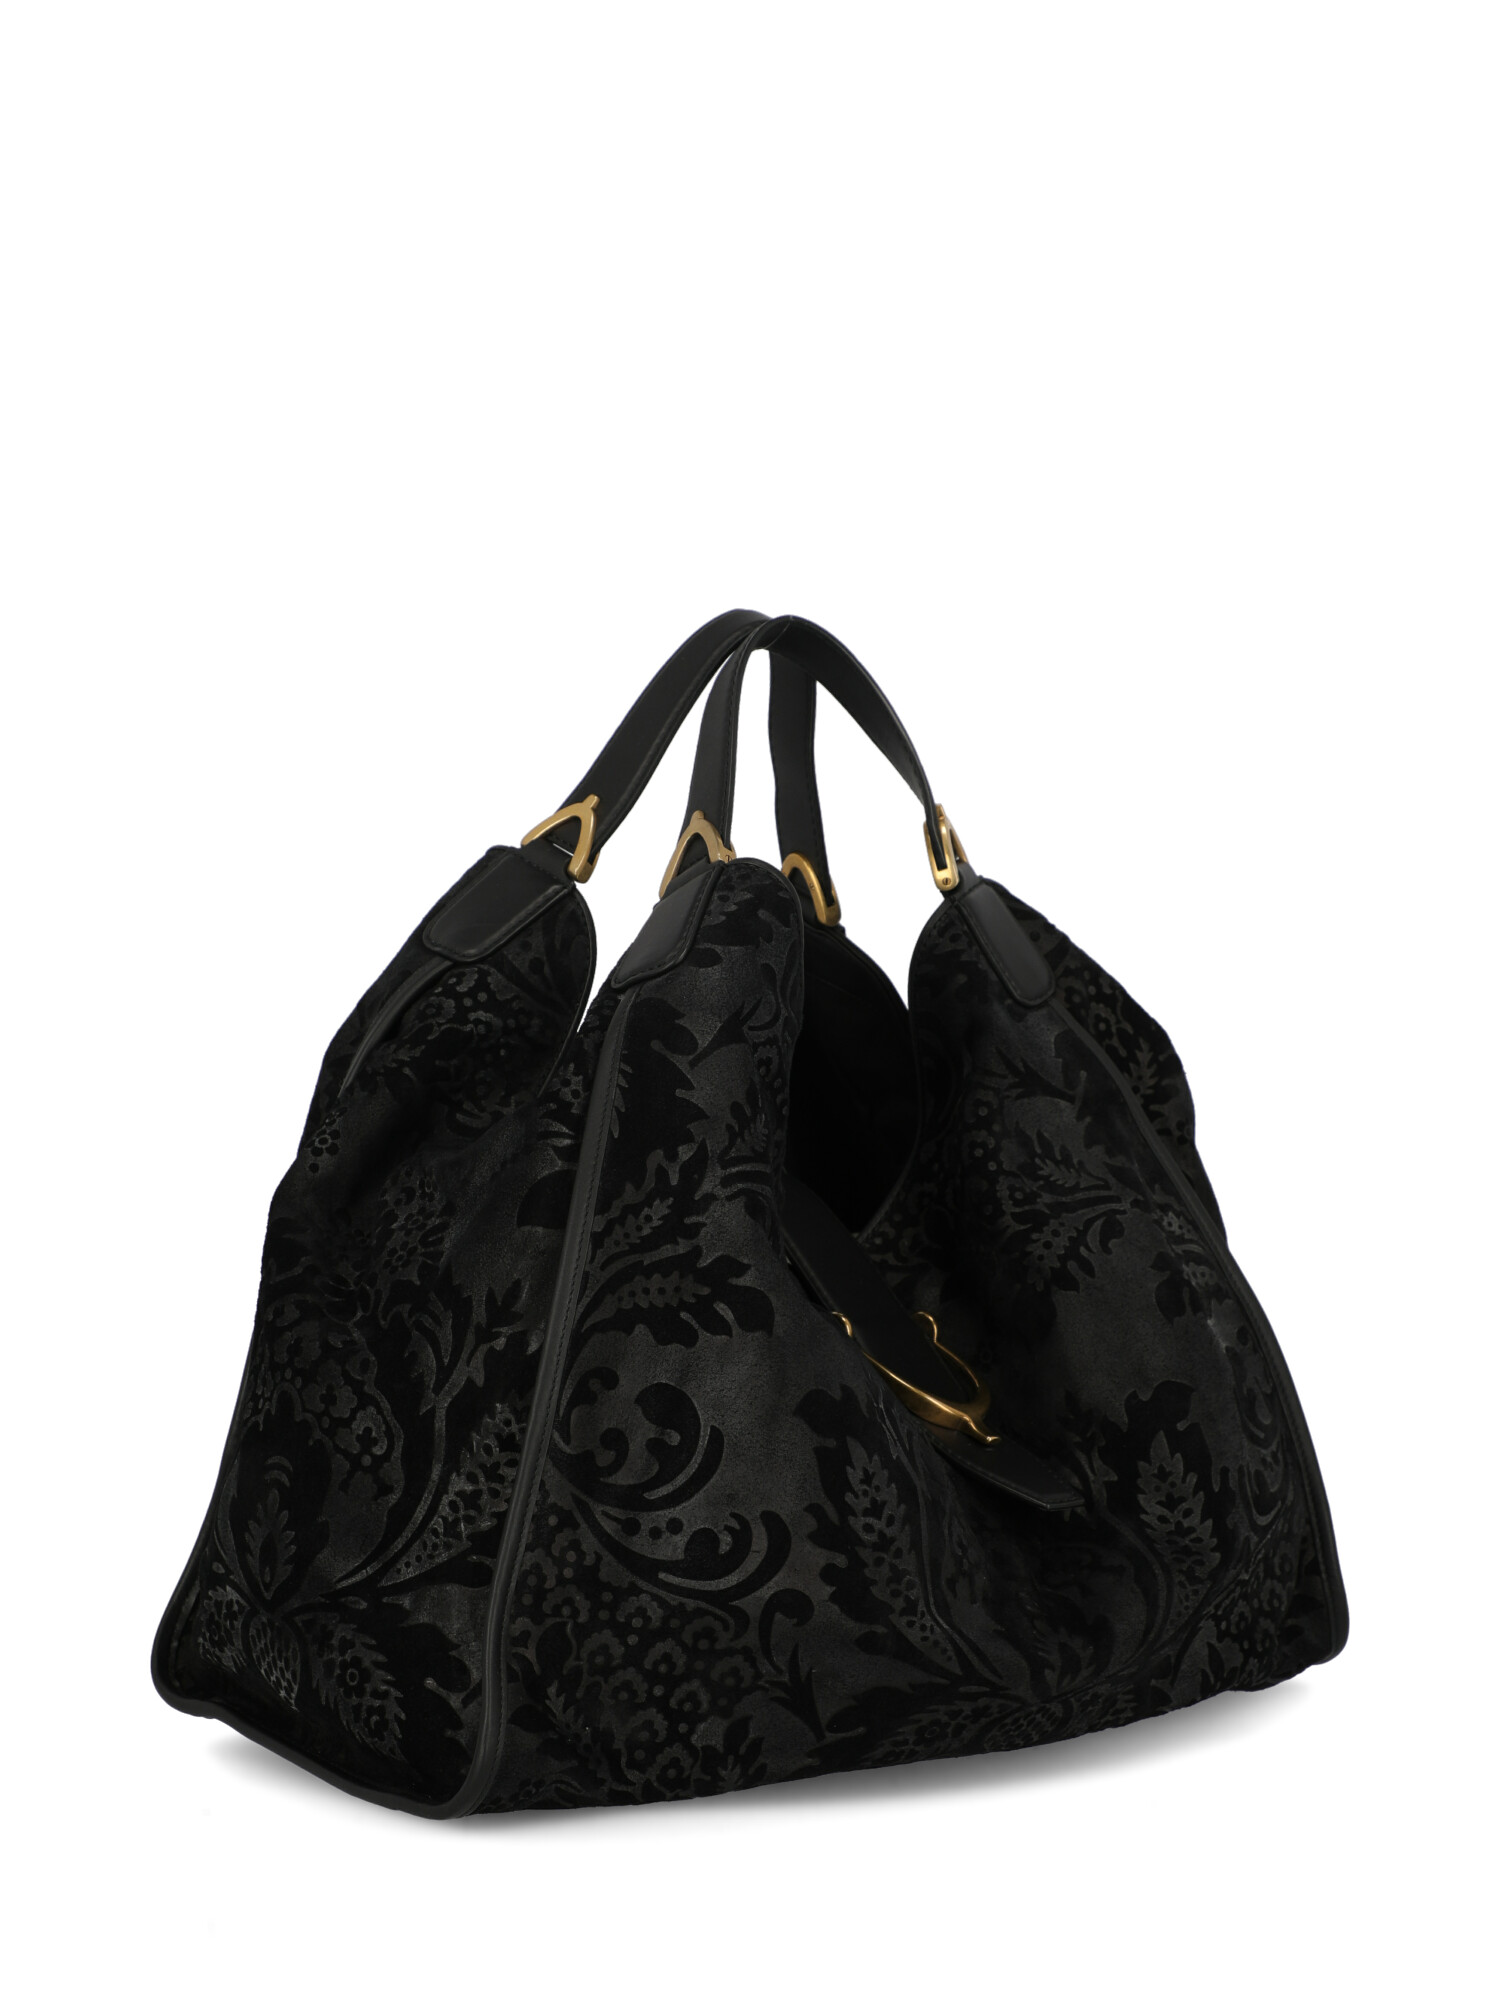 Gucci Special Price Women Handbags Black | eBay